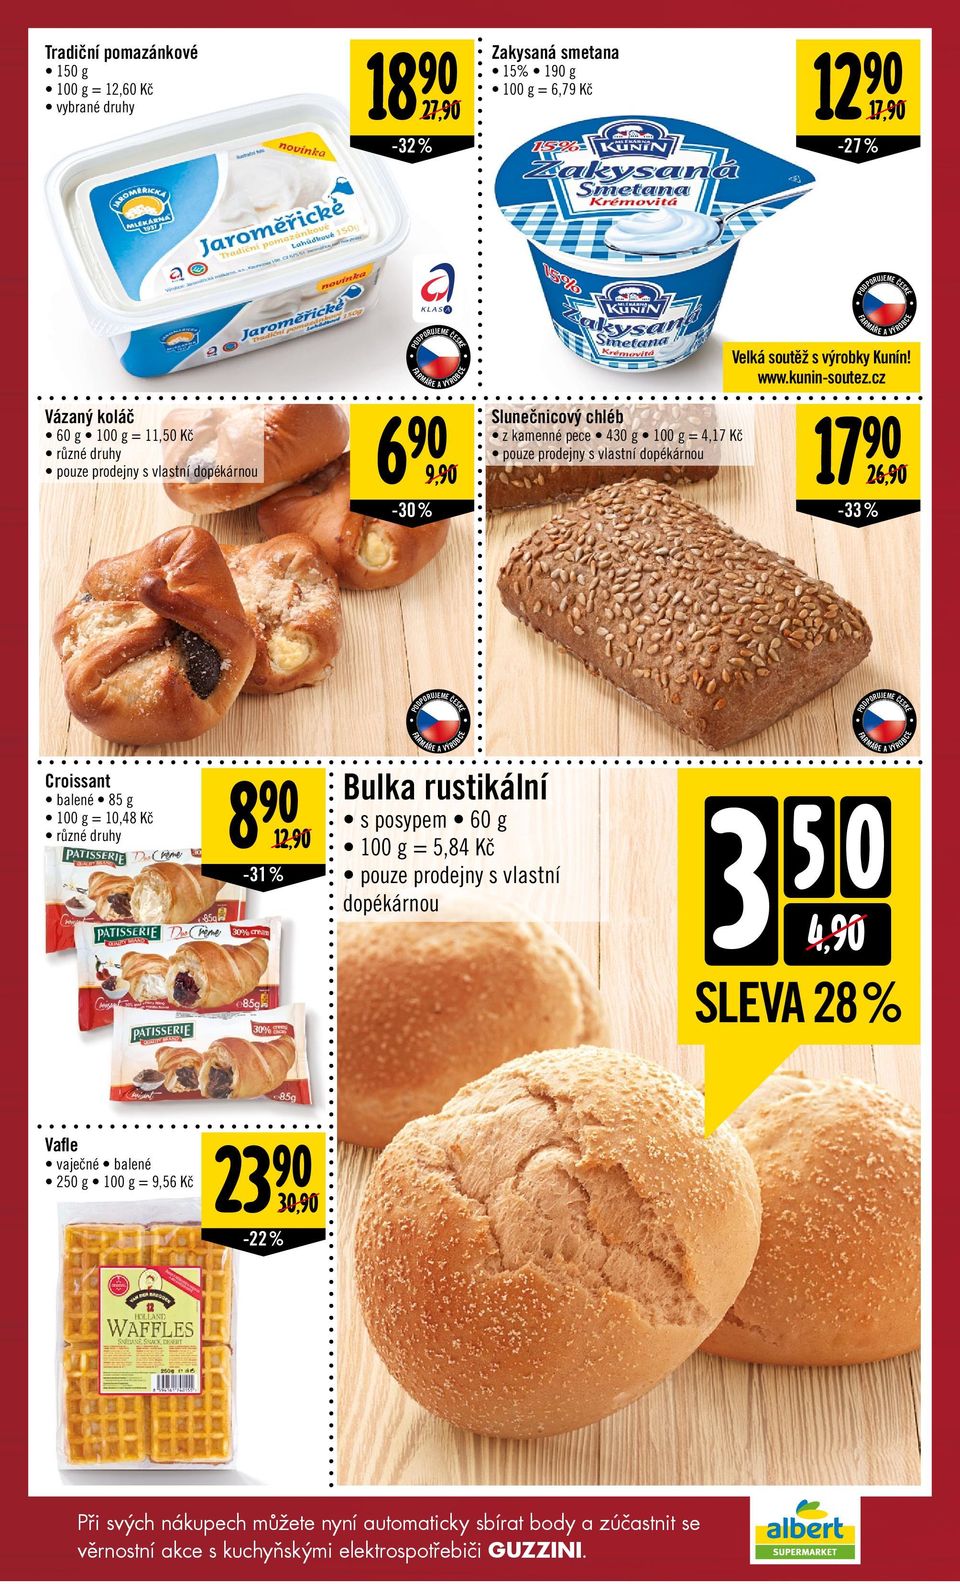 cz 6 Slunečnicový chléb z kamenné pece 430 g = 4,17 Kč pouze prodejny s vlastní dopékárnou 9, 17-30% -33% 26, JEZTE ČESK Croissant balené 85 g = 10,48 Kč různé druhy 8 12, -31%